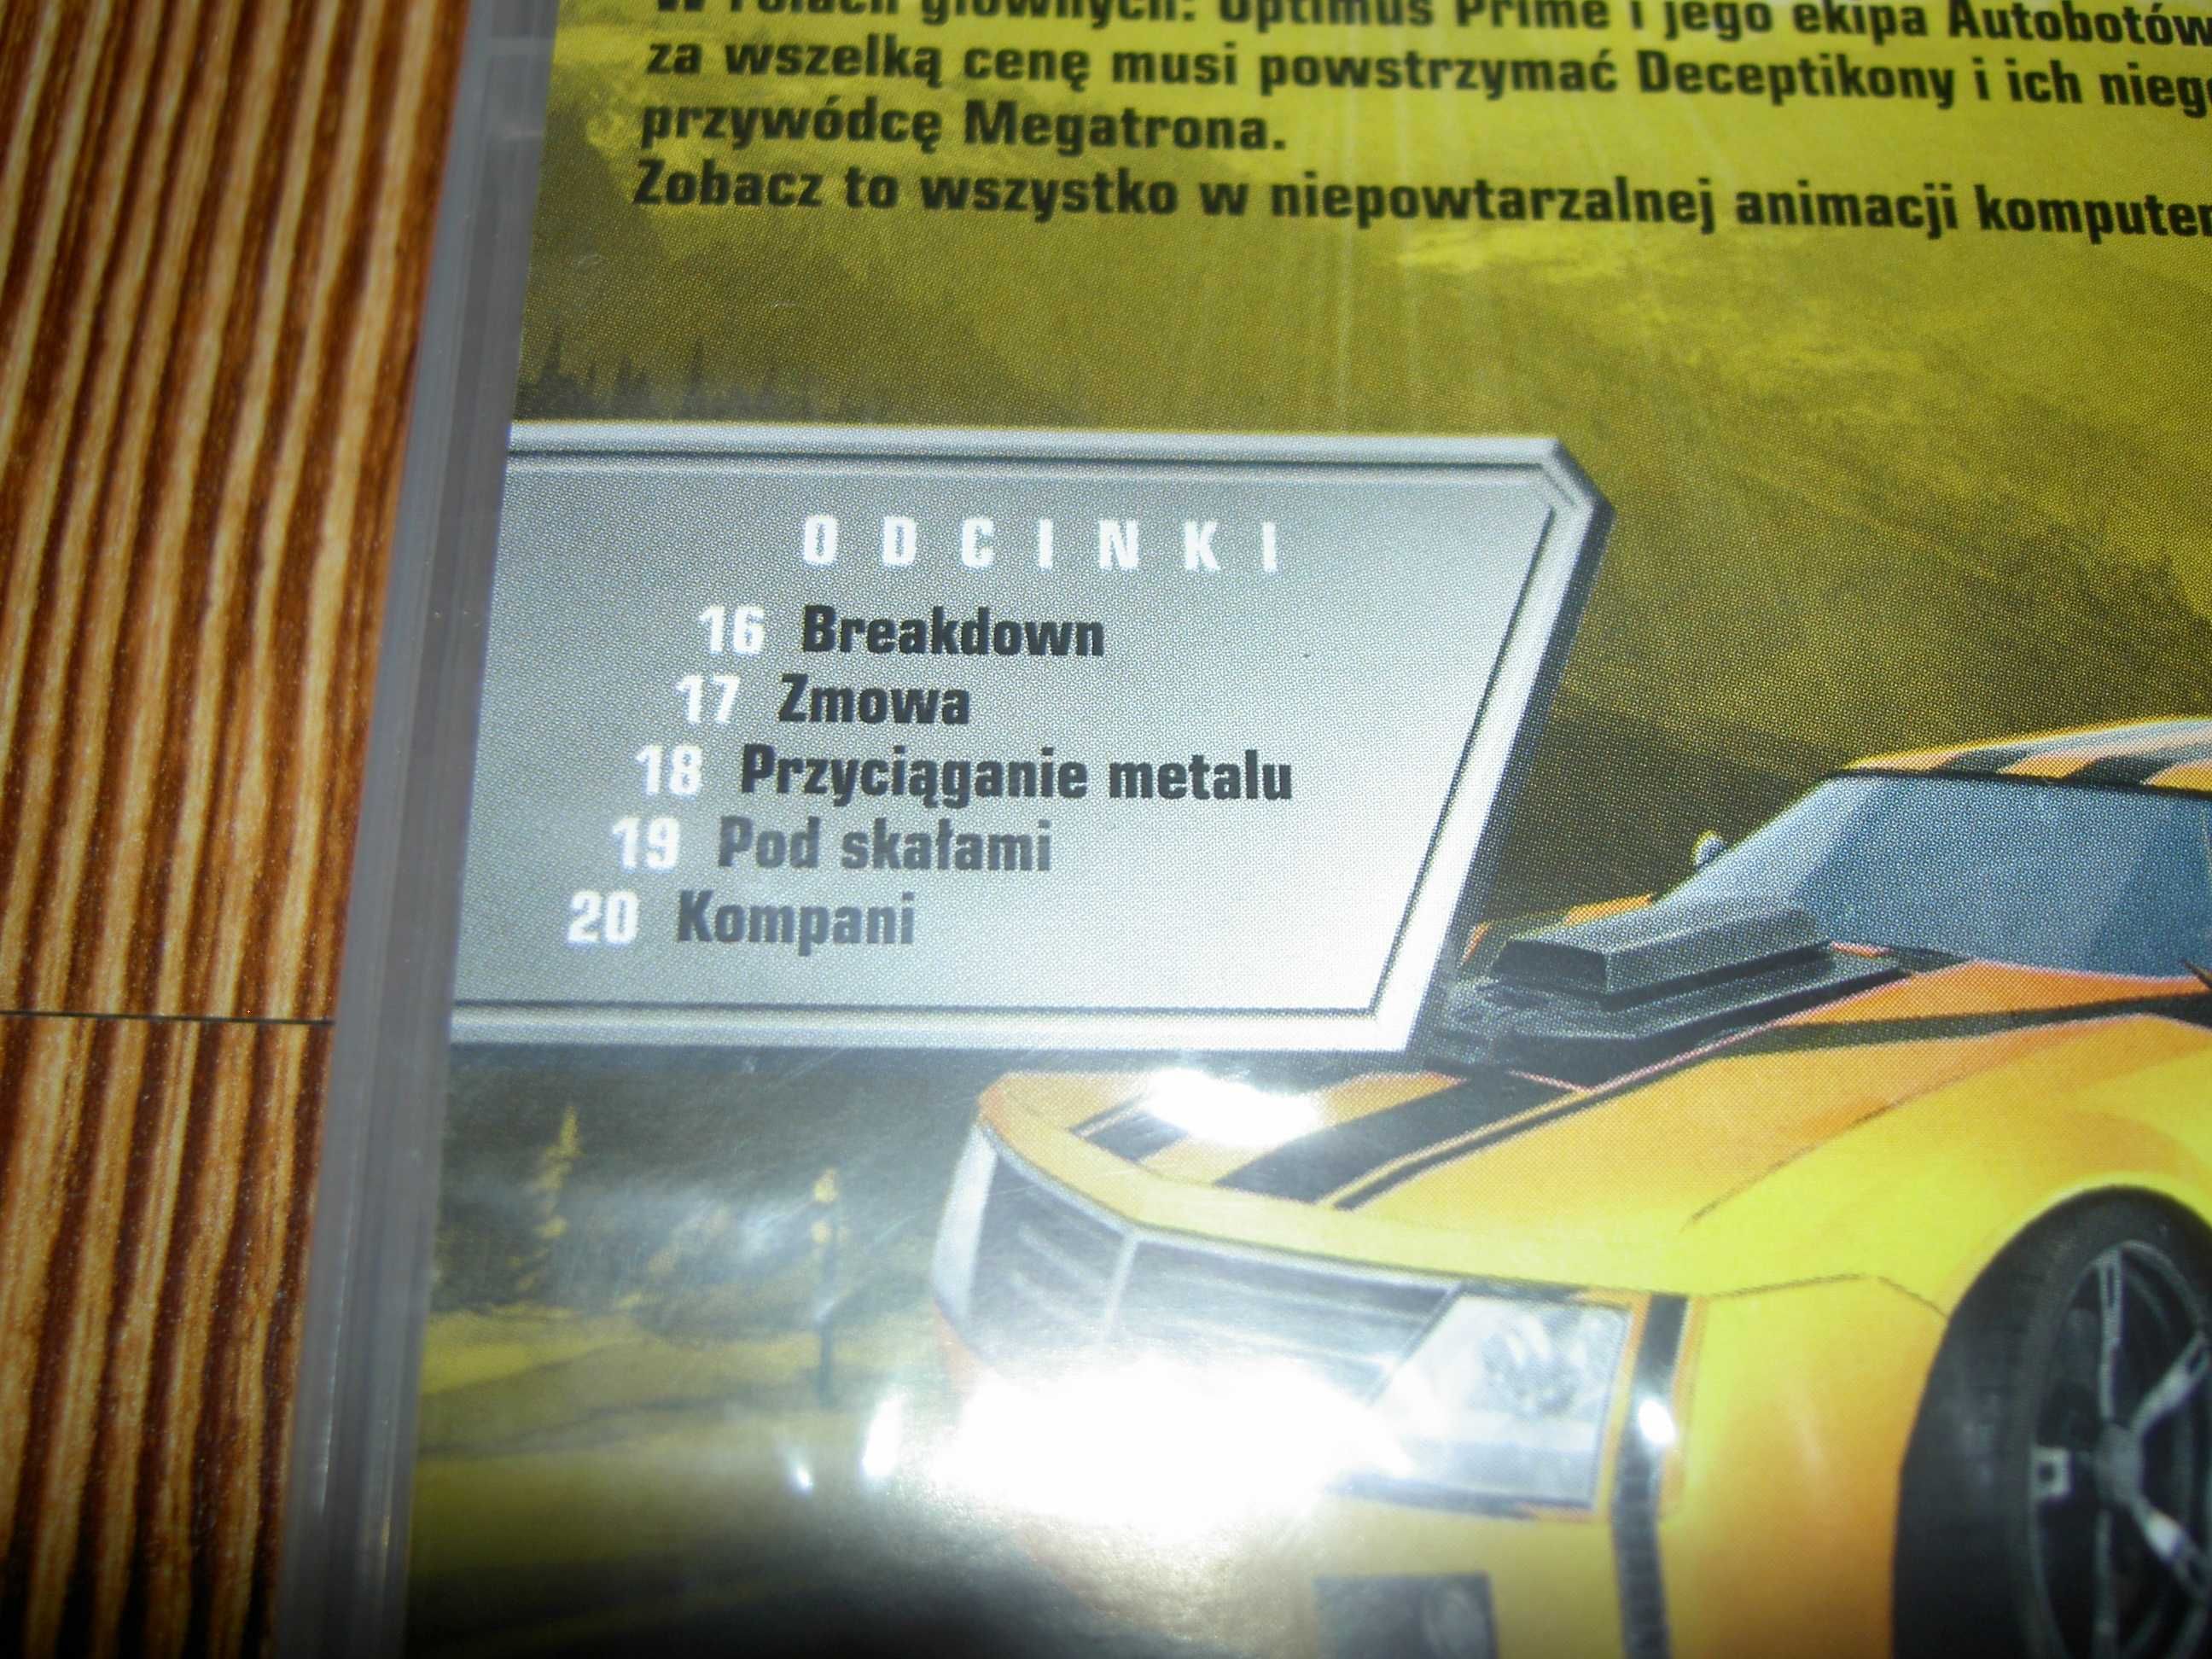 Transformers Prime 1-5 DVD NOWE w FOLII mrok niebezpieczny decepticons